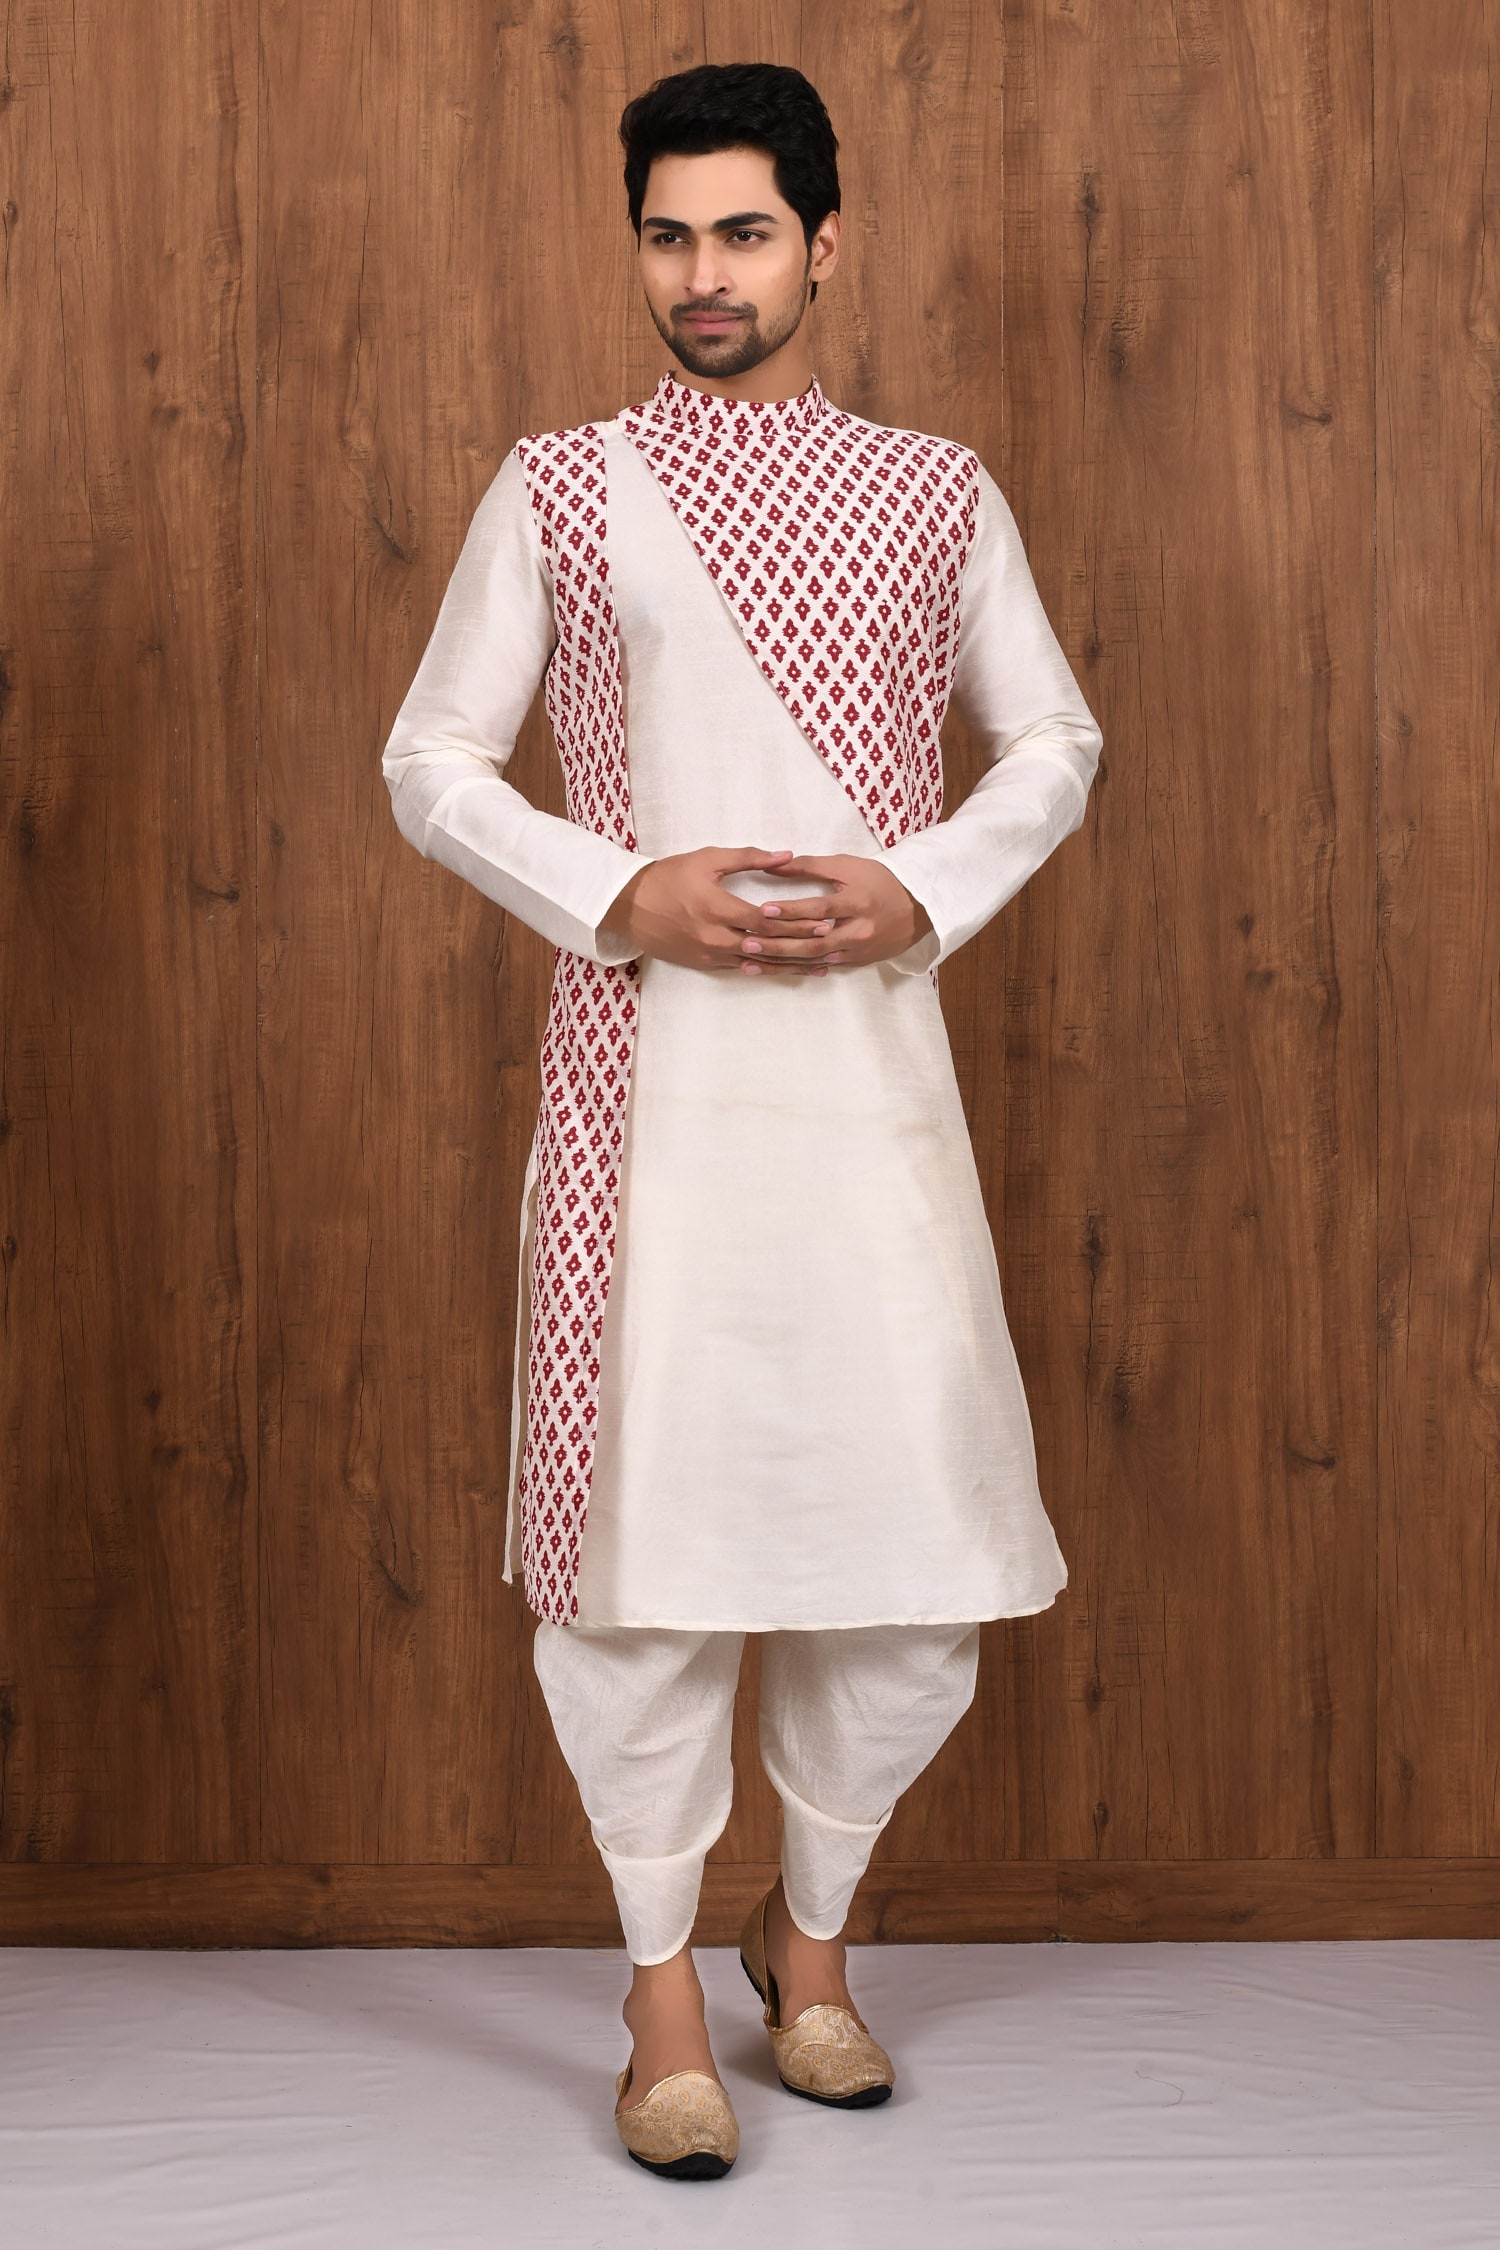 Beautiful Jacket style kurti with beautiful embellishments. | Kurti designs  party wear, Simple kurti designs, Stylish dresses